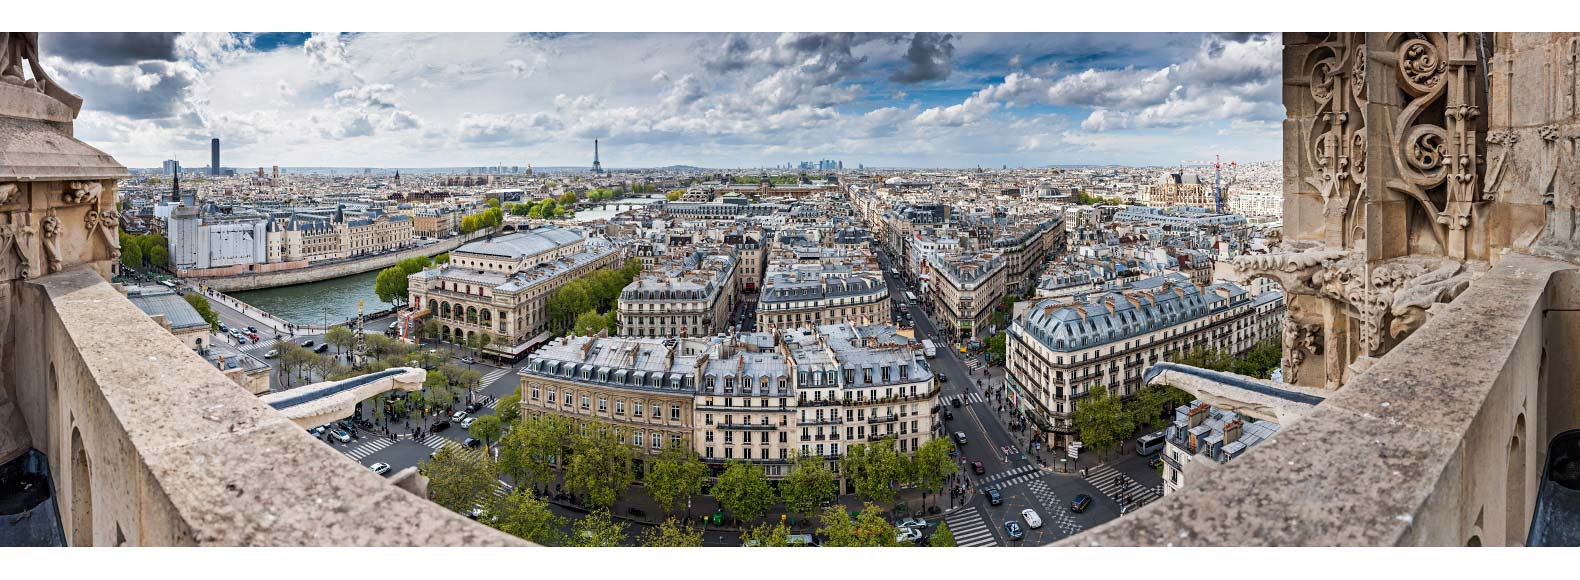 Panorama 180° sur Paris ouest depuis la tour Saint-Jacques. Photo panoramique 180° de Paris Ouest jusqu'à la défense